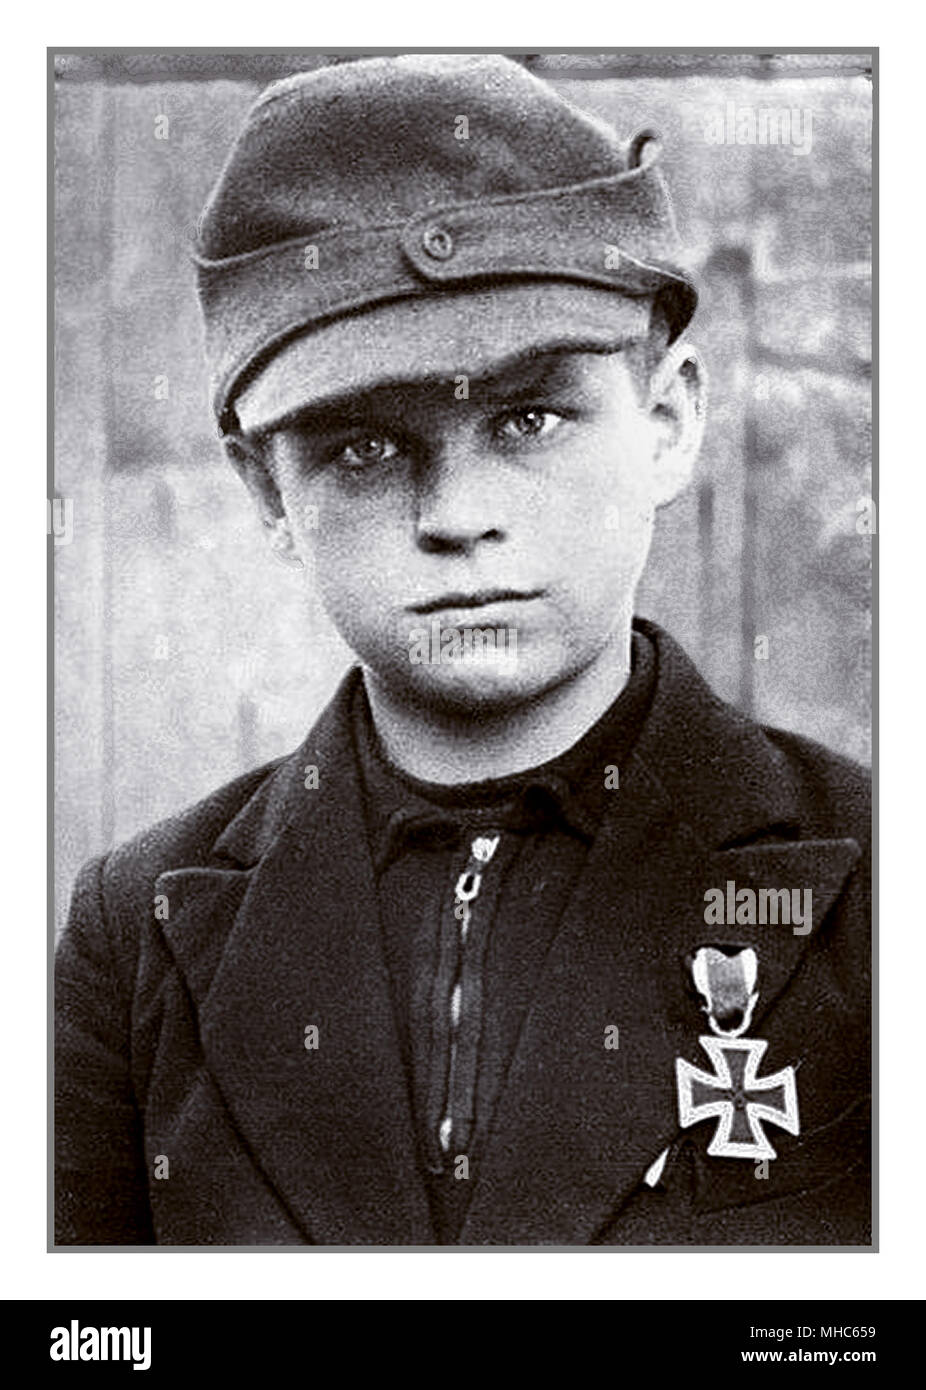 1940 Das Foto von Hitler Jugend Medaille Iron Cross.. Junge Menschen im Alter von 10-12 Jahren, die bereits mit einem Eisernen Kreuz Medaille für Tapferkeit vorgestellt, aus Reihen der Hitlerjugend, versendet mit blindem Glauben und falsch verstandener Loyalität um jeden Preis Berlin Deutschland in der letzten Phase des Zweiten Weltkriegs 1945 zu verteidigen. Stockfoto